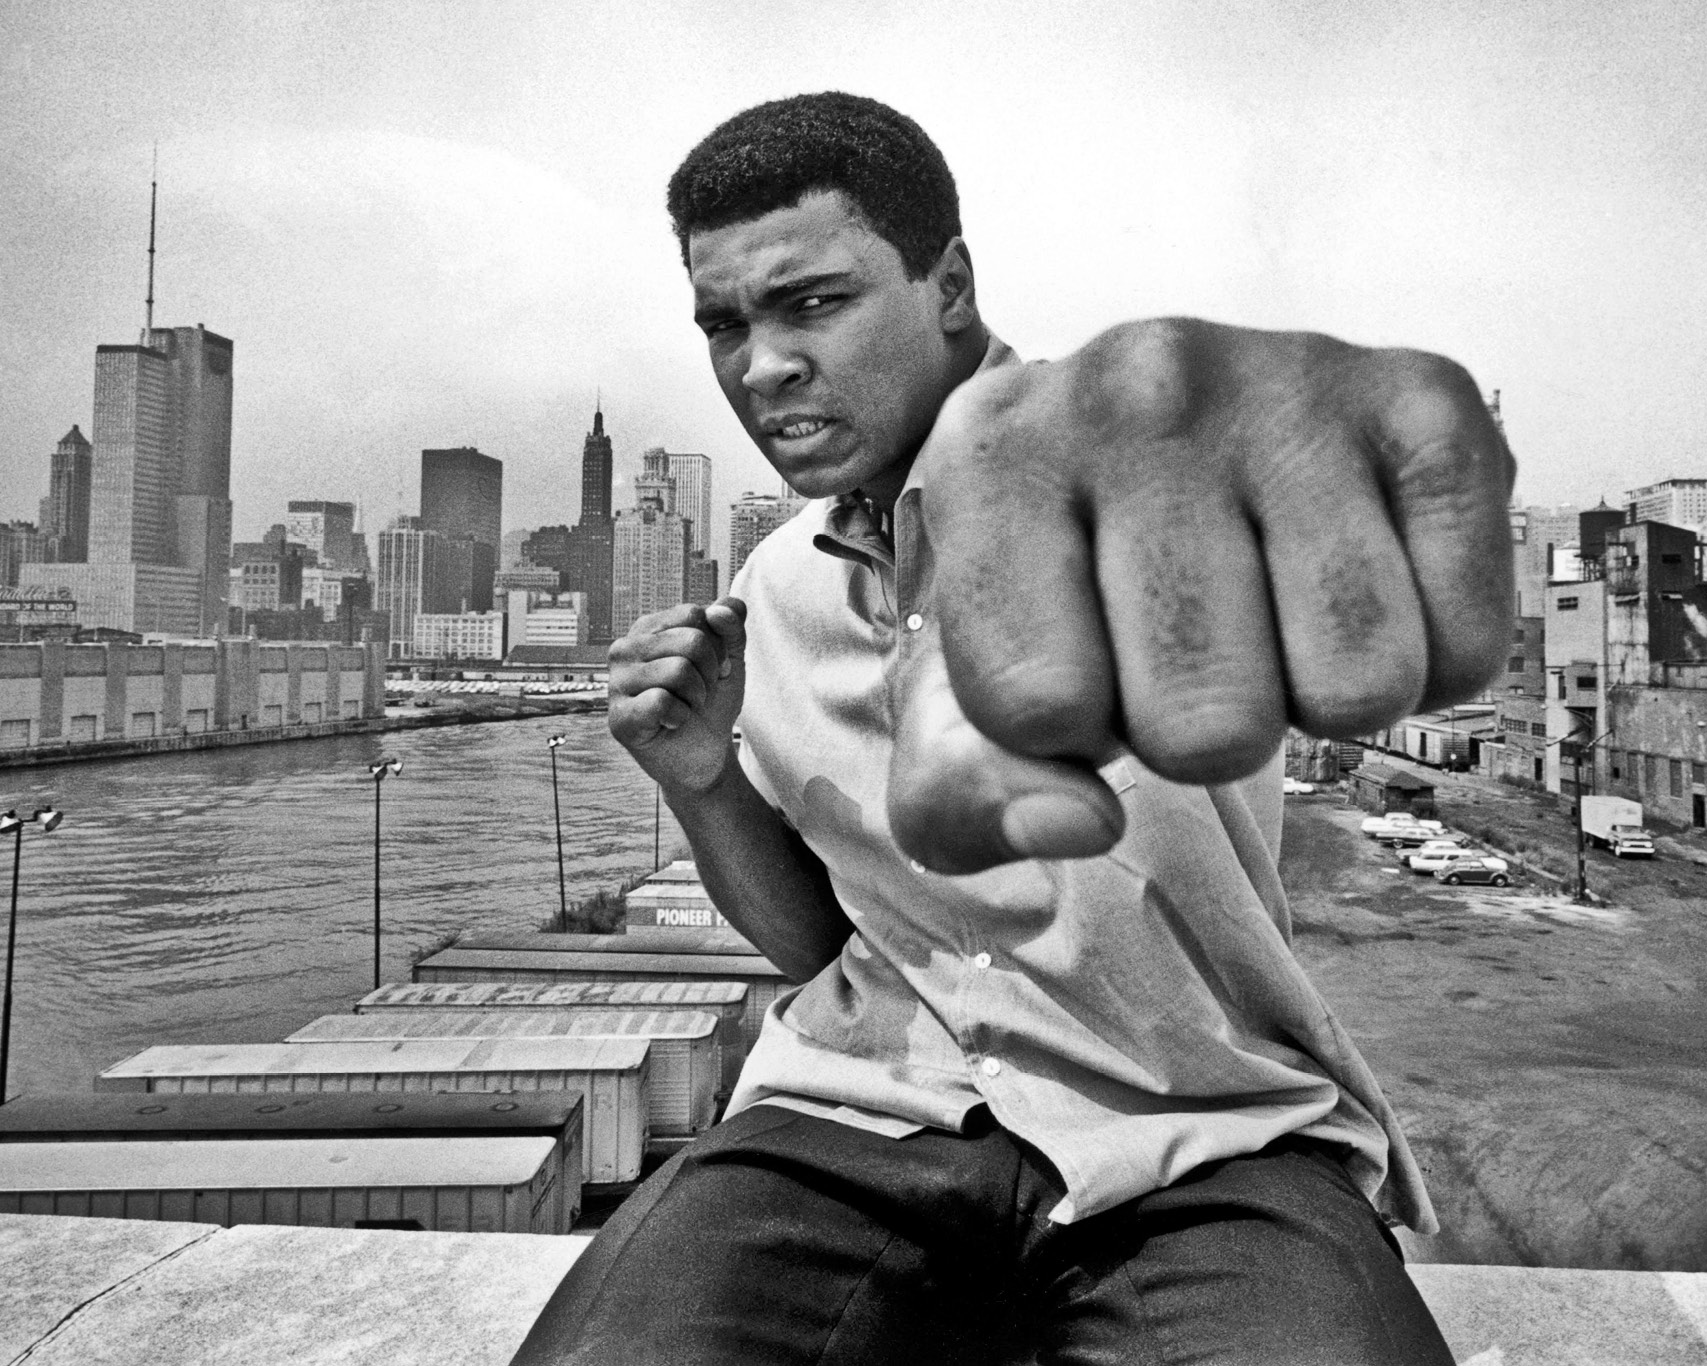 La biografia definitiva di Ali, “The Greatest”. Una storia di combattimenti devastanti e di sfruttamento che indignano